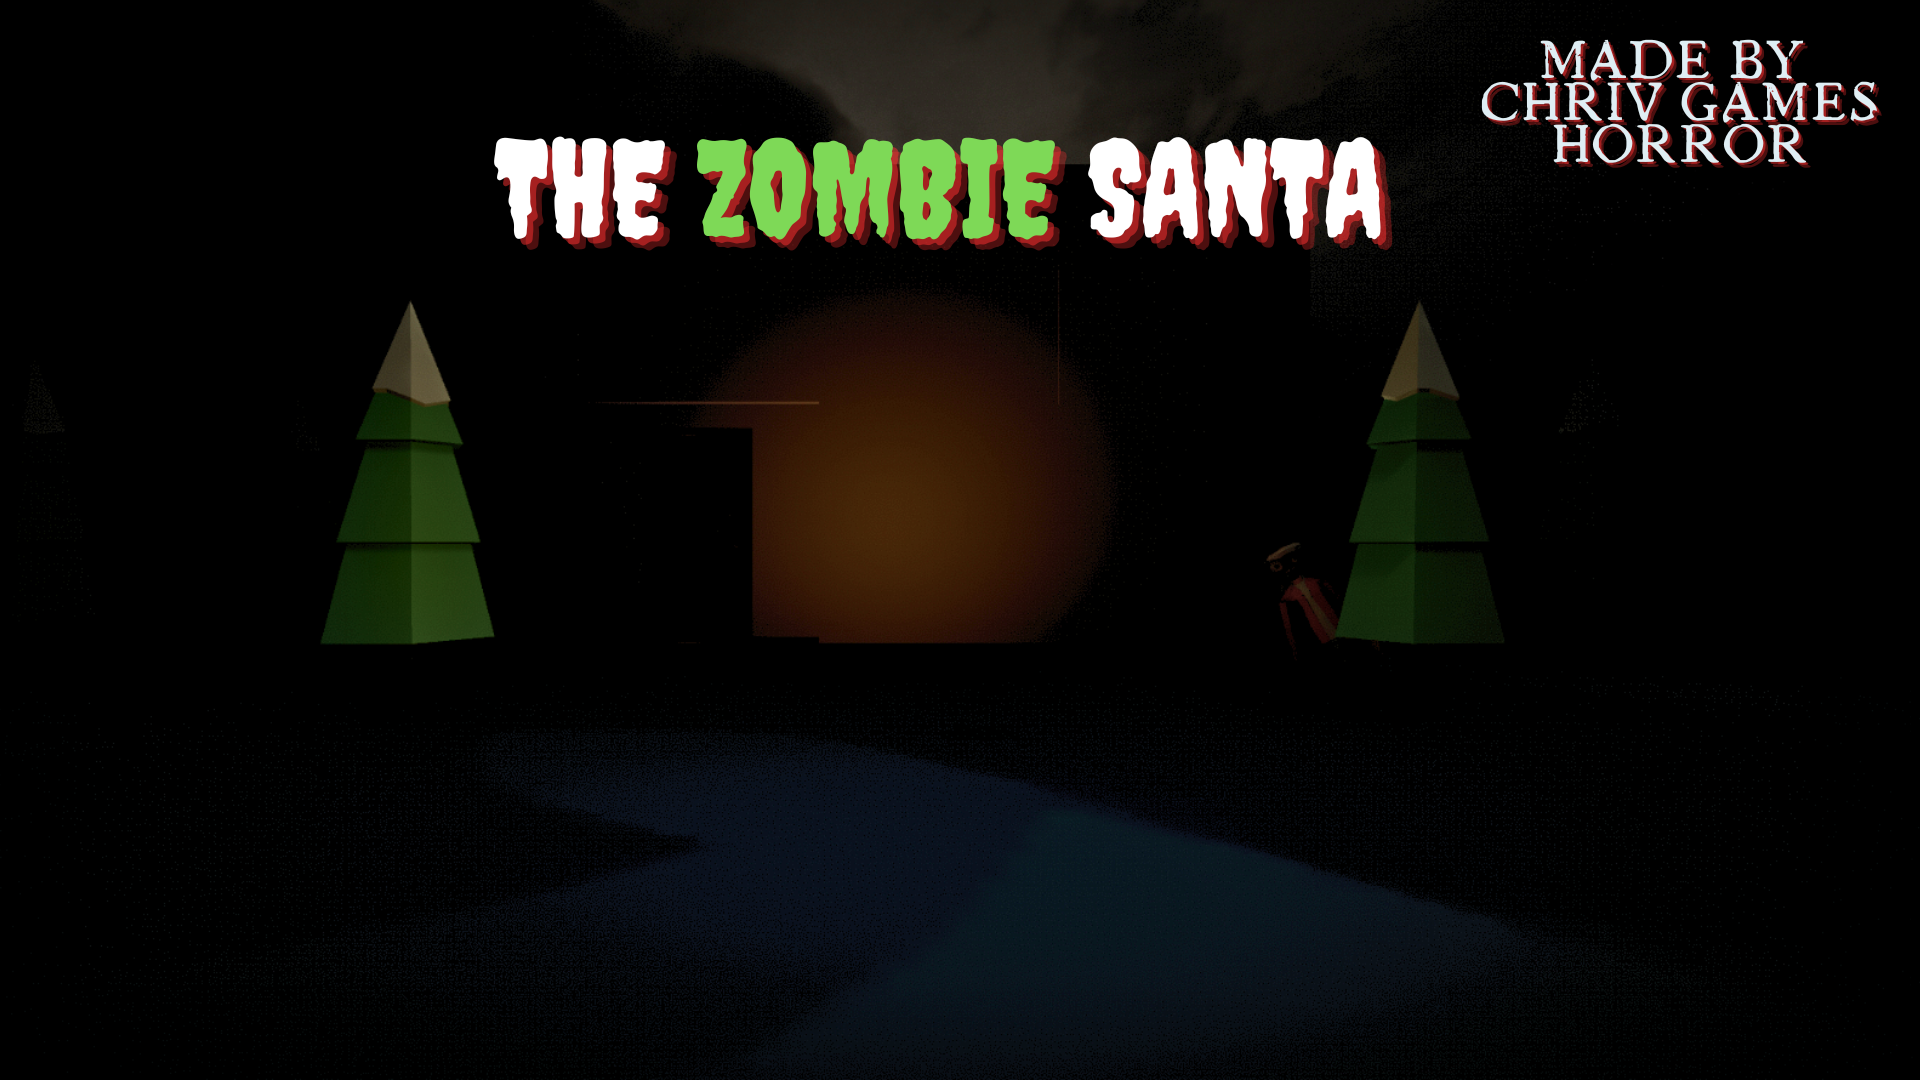 The Zombie Santa